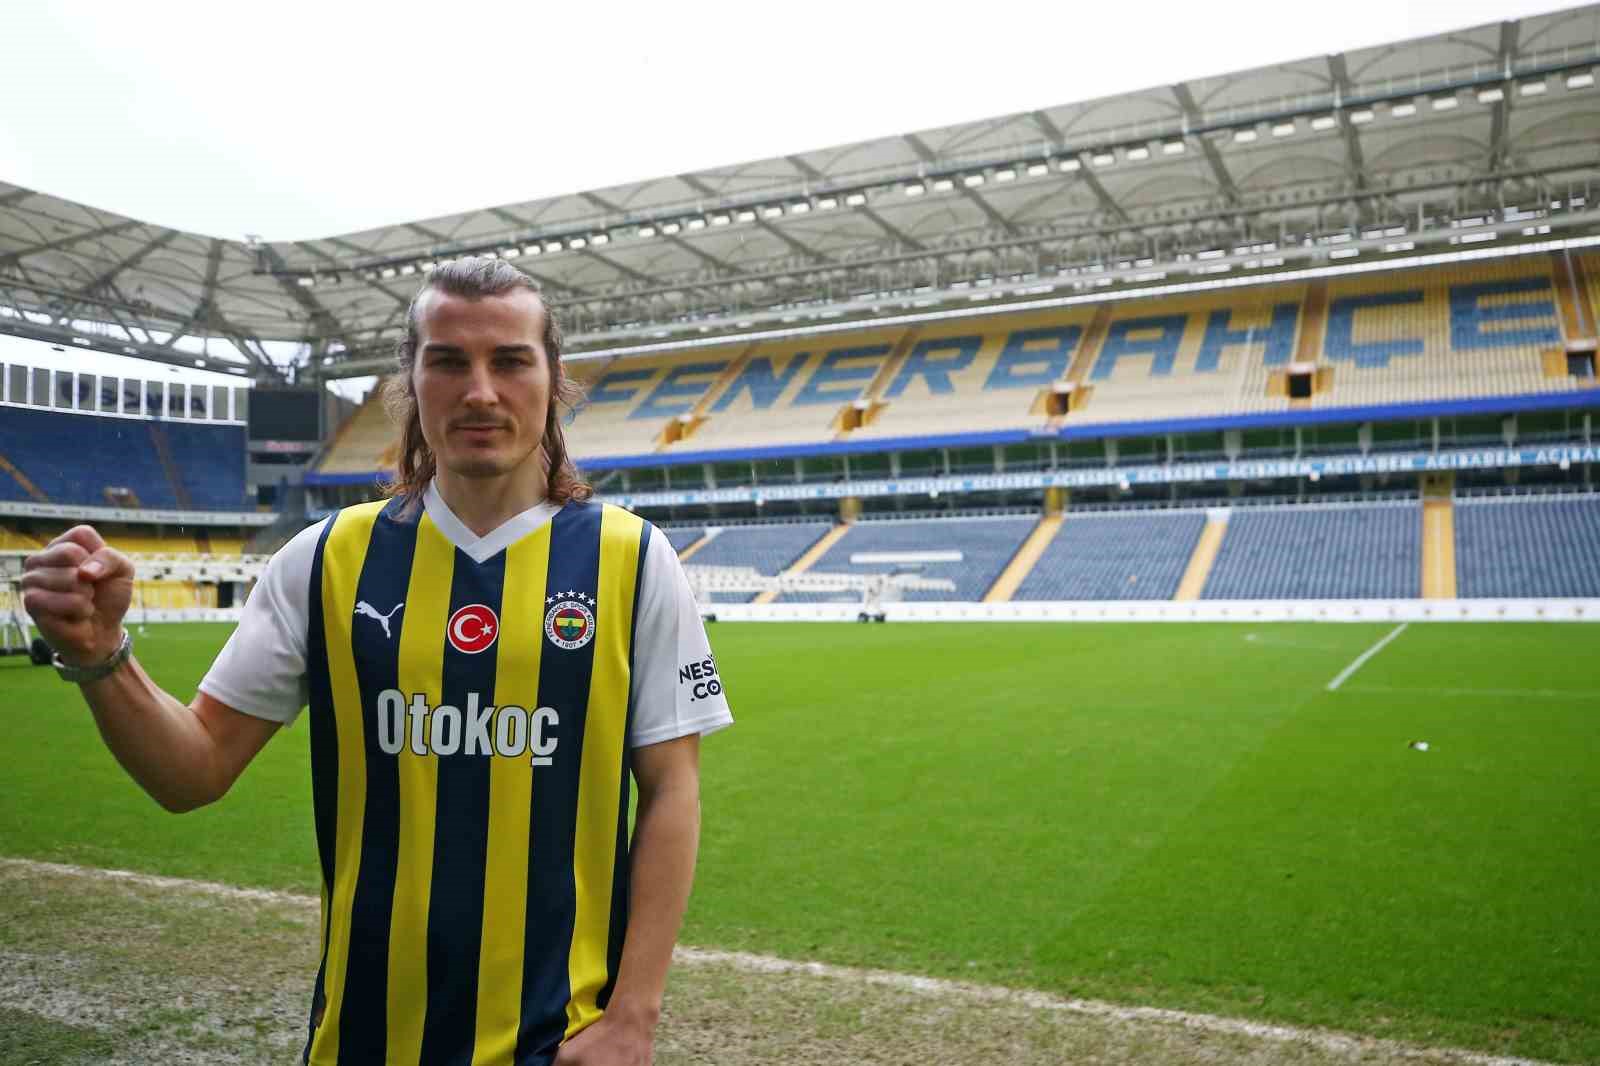 Fenerbahçe’nin kış transfer dönemi dosyası